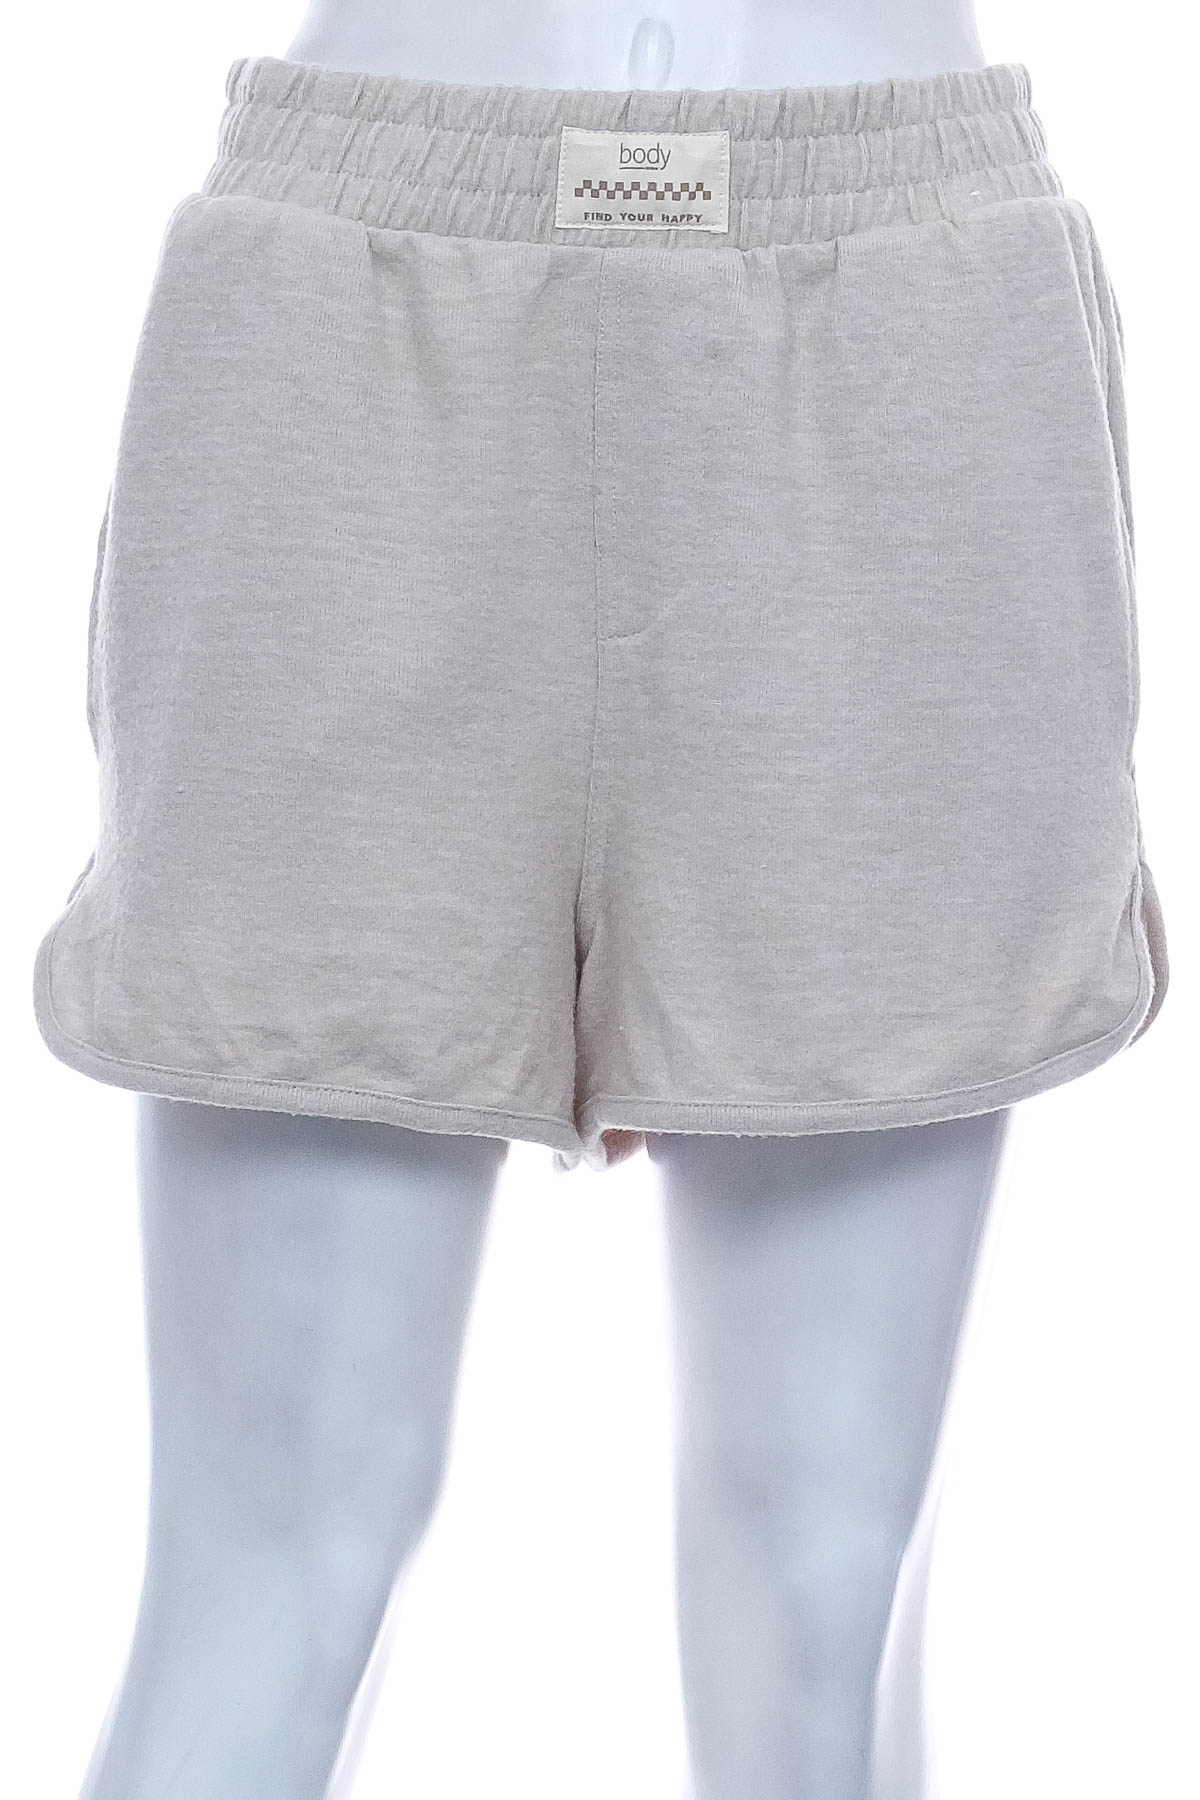 Female shorts - Body - 0